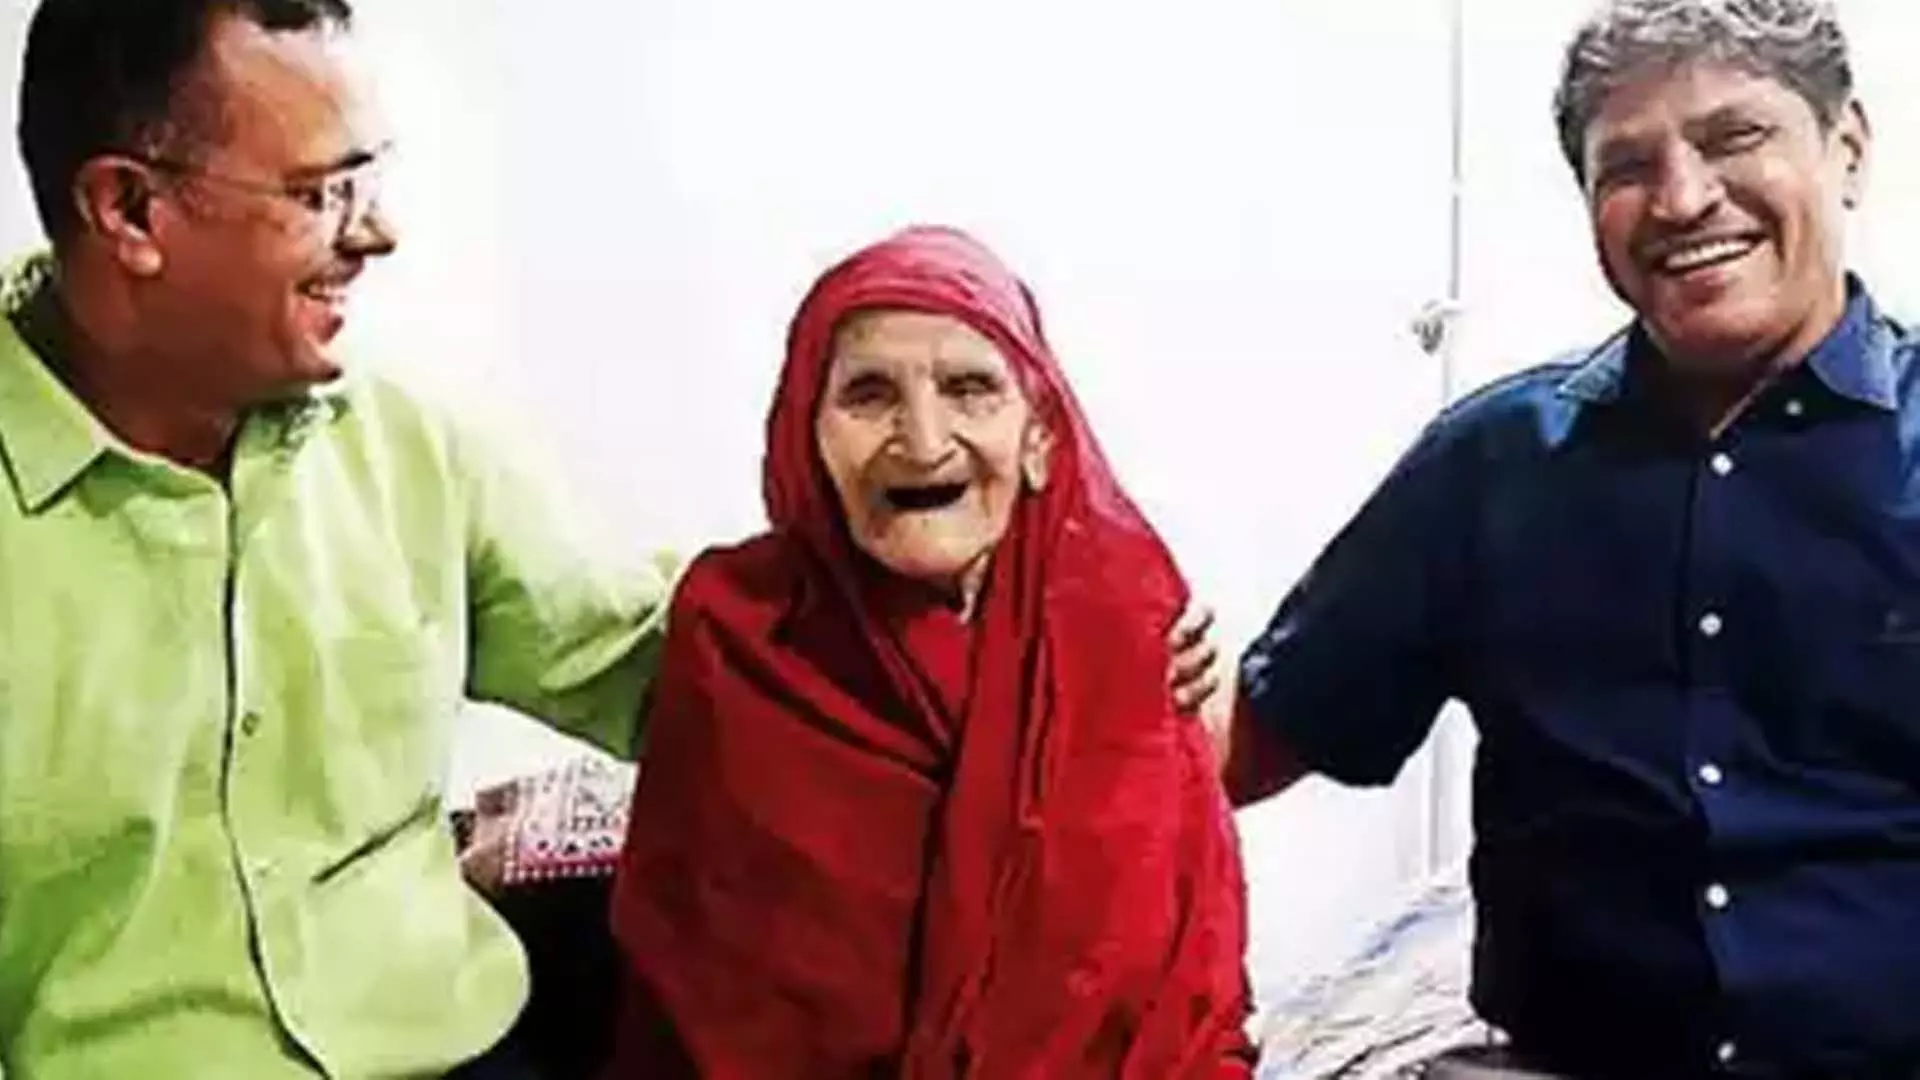 Gujarat News: हिप रिप्लेसमेंट के बाद 110 वर्षीय महिला अपने पैरों पर वापस आई